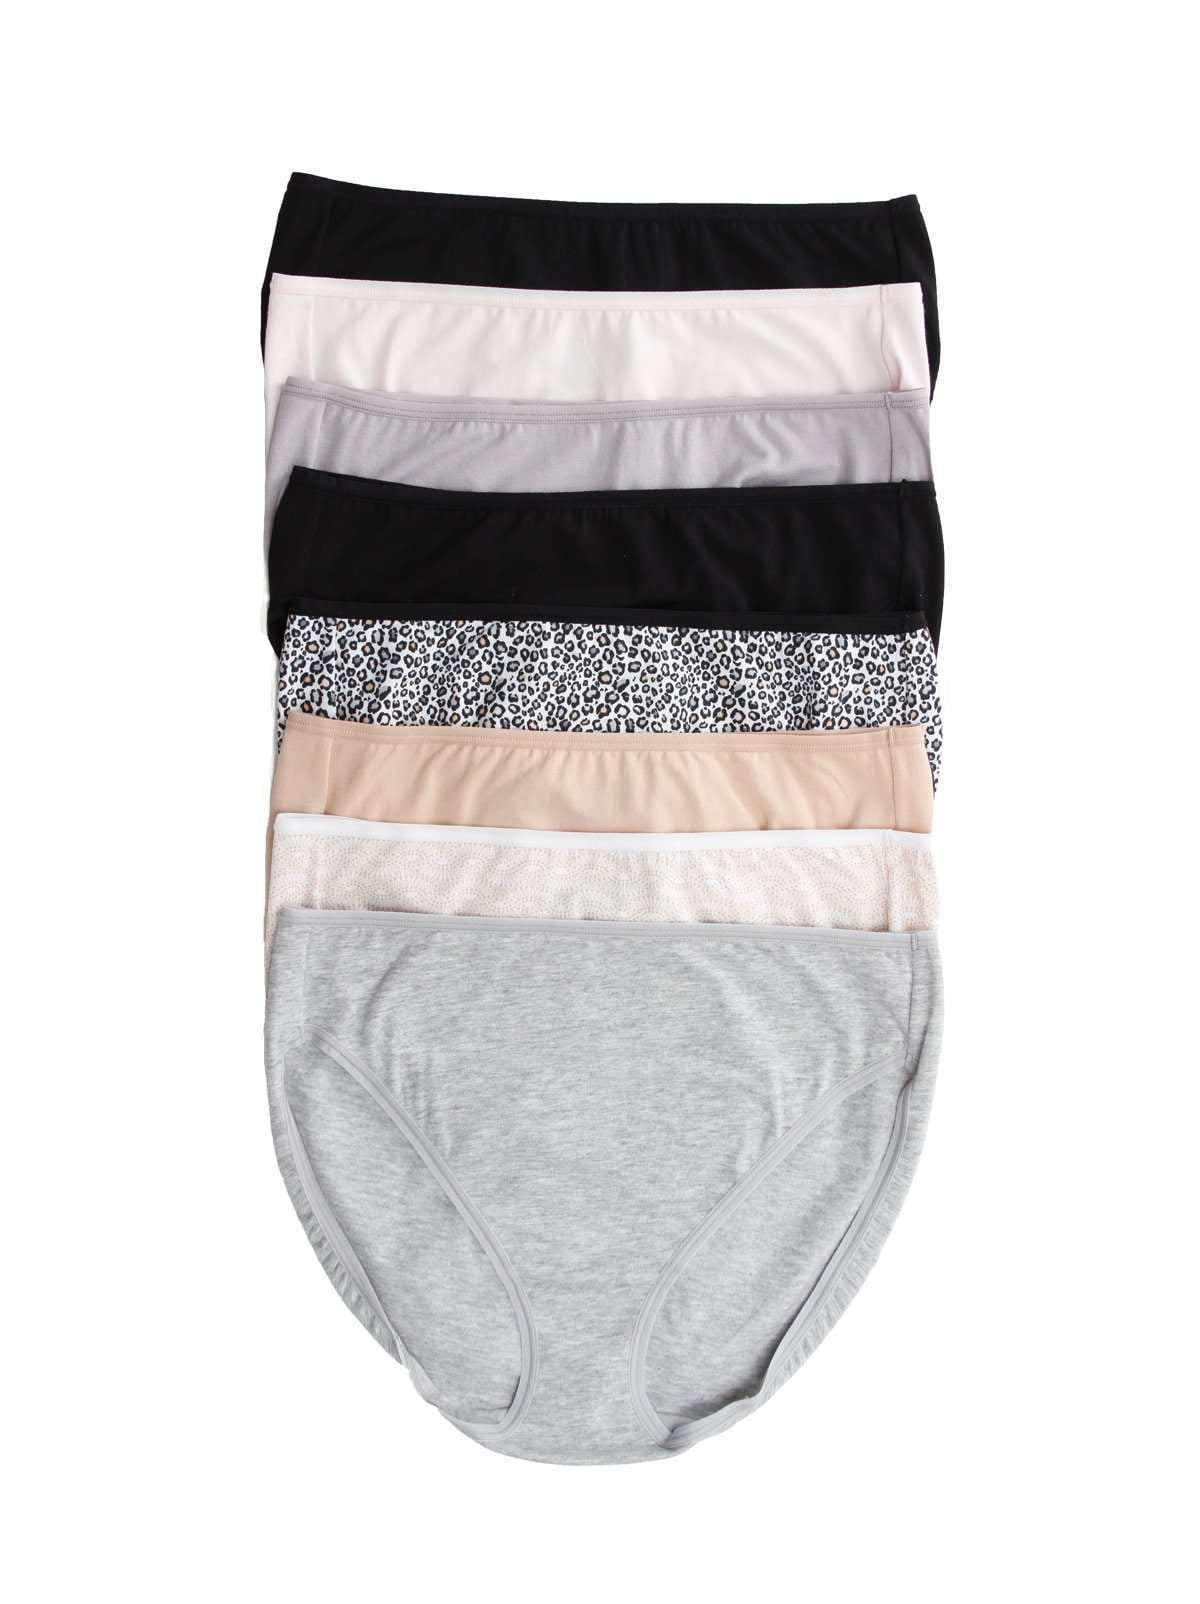 Felina Cotton Modal Hi Cut Panties - Sexy Lingerie Panties for 